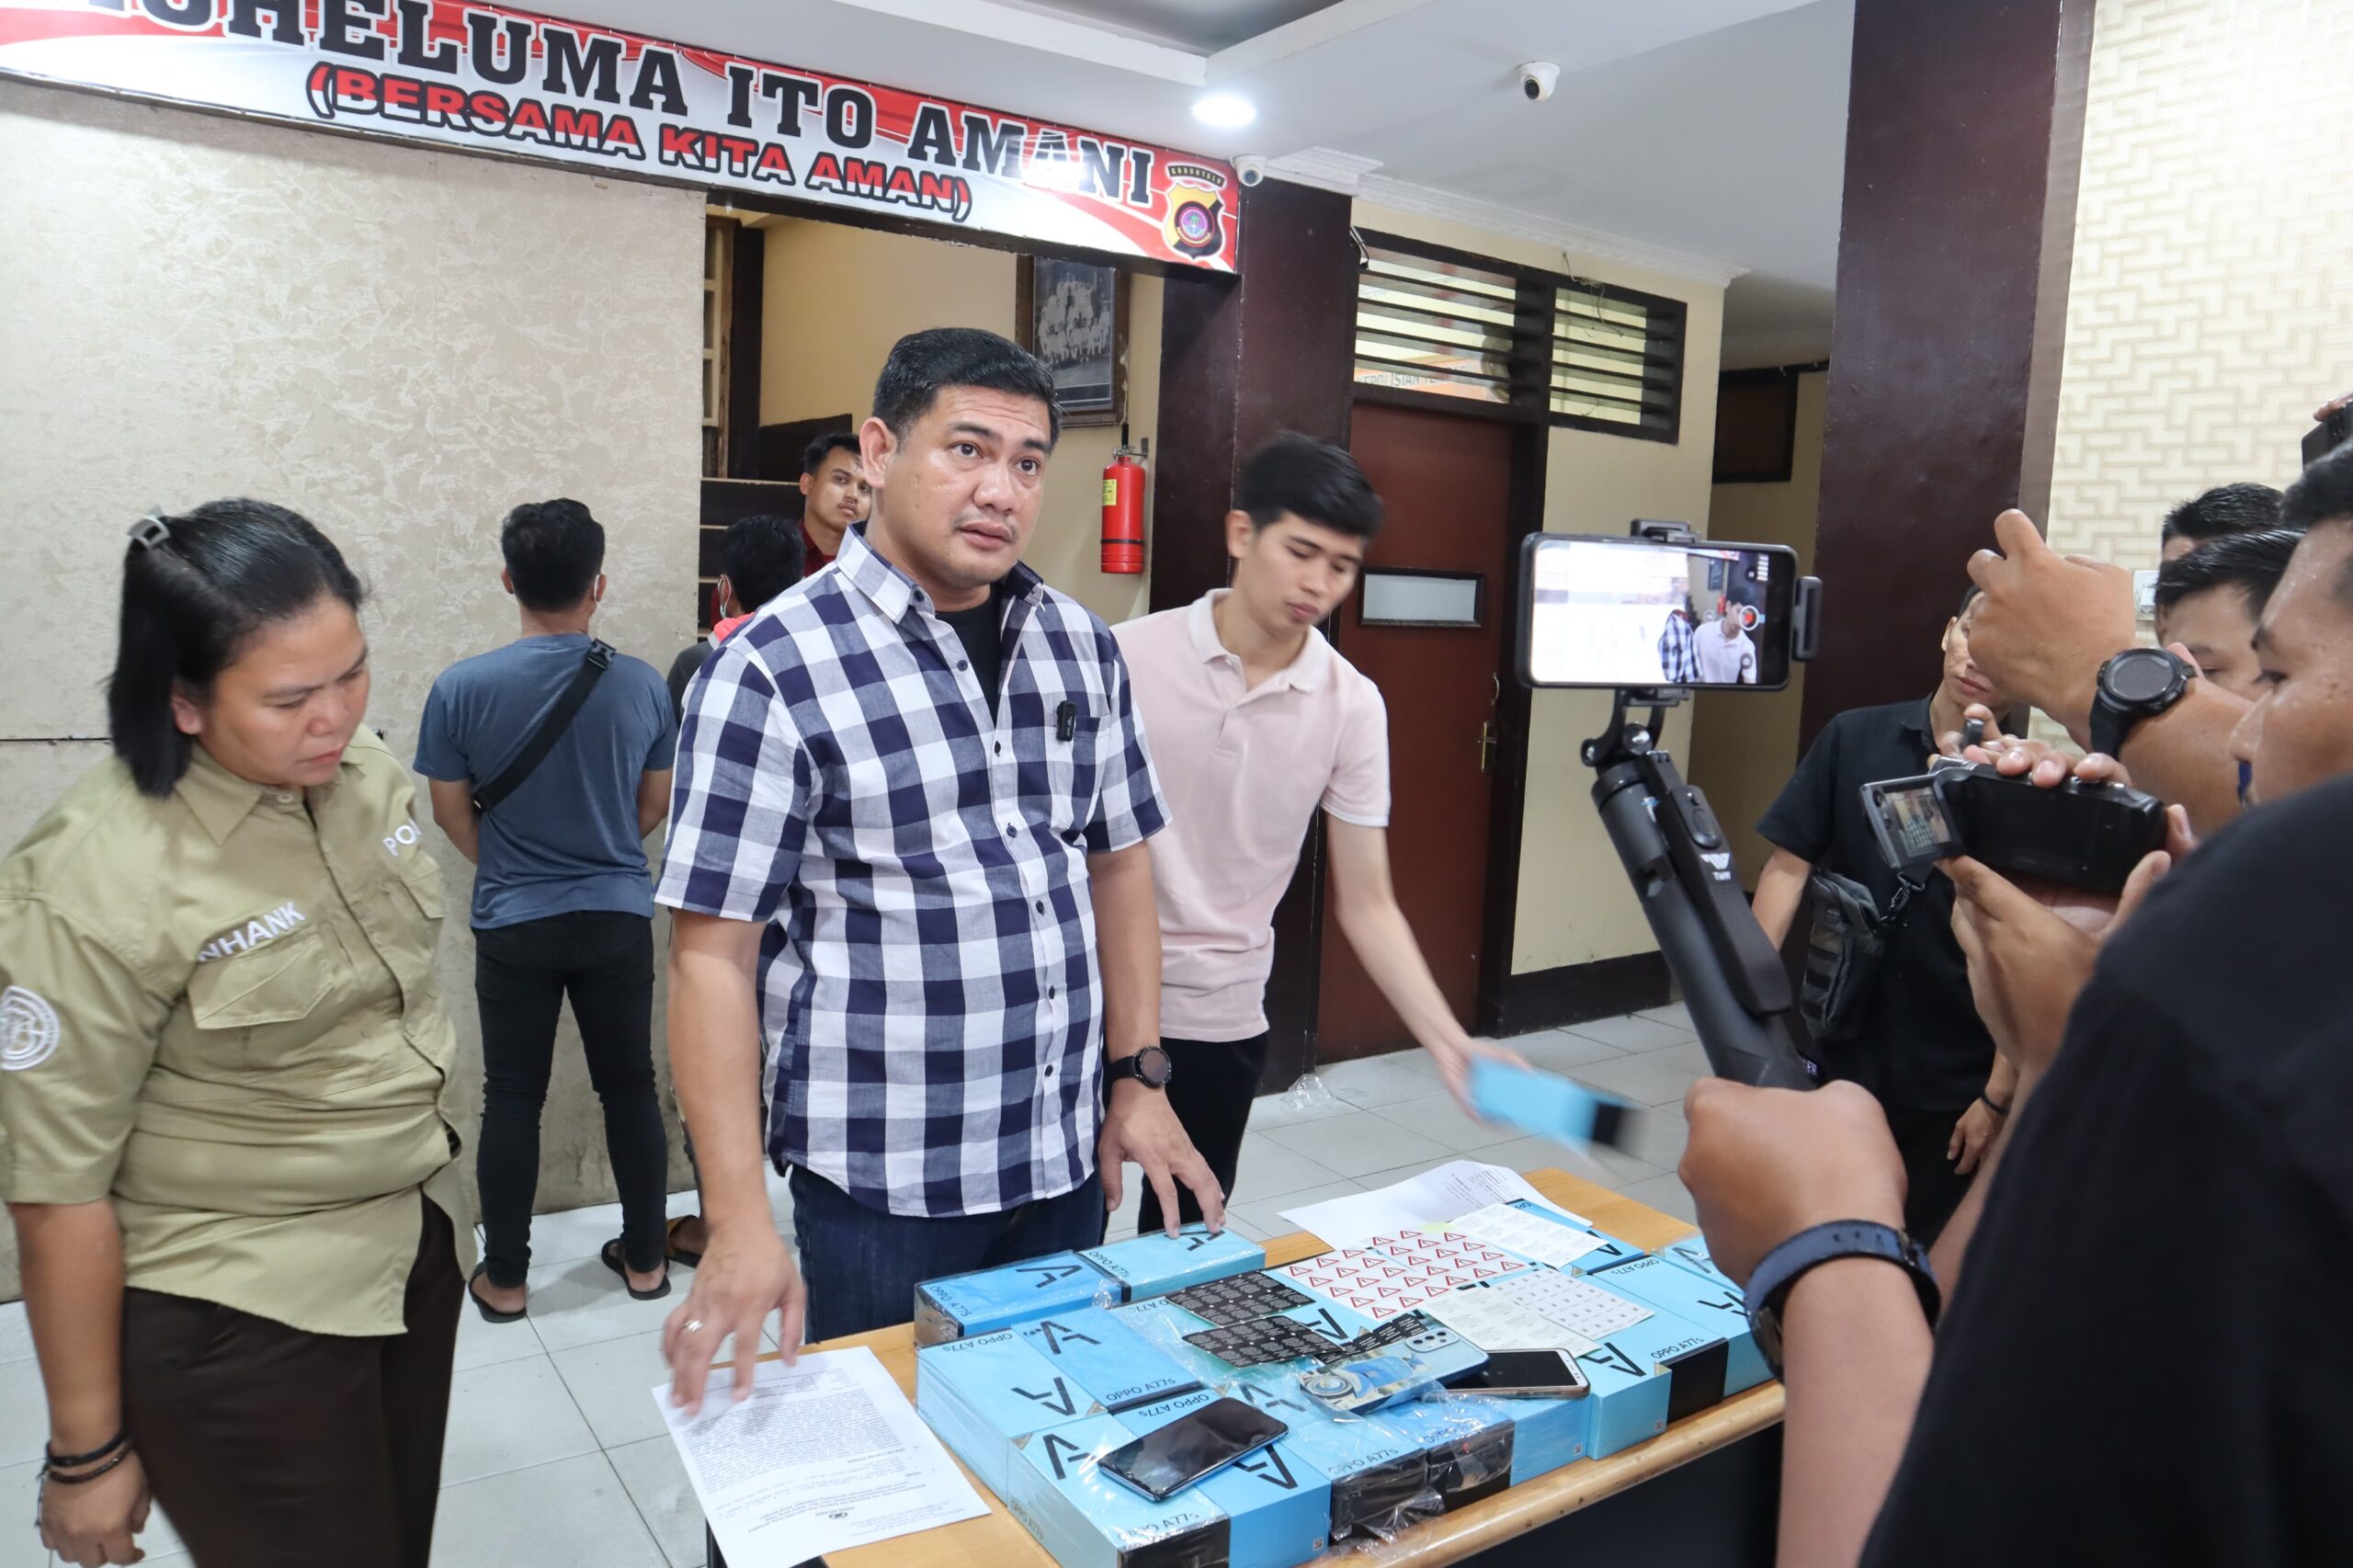 Melalui konferensi pers, Polresta Gorontalo Kota, mengungkap kasus jual beli handphone daur ulang/Hibata.id